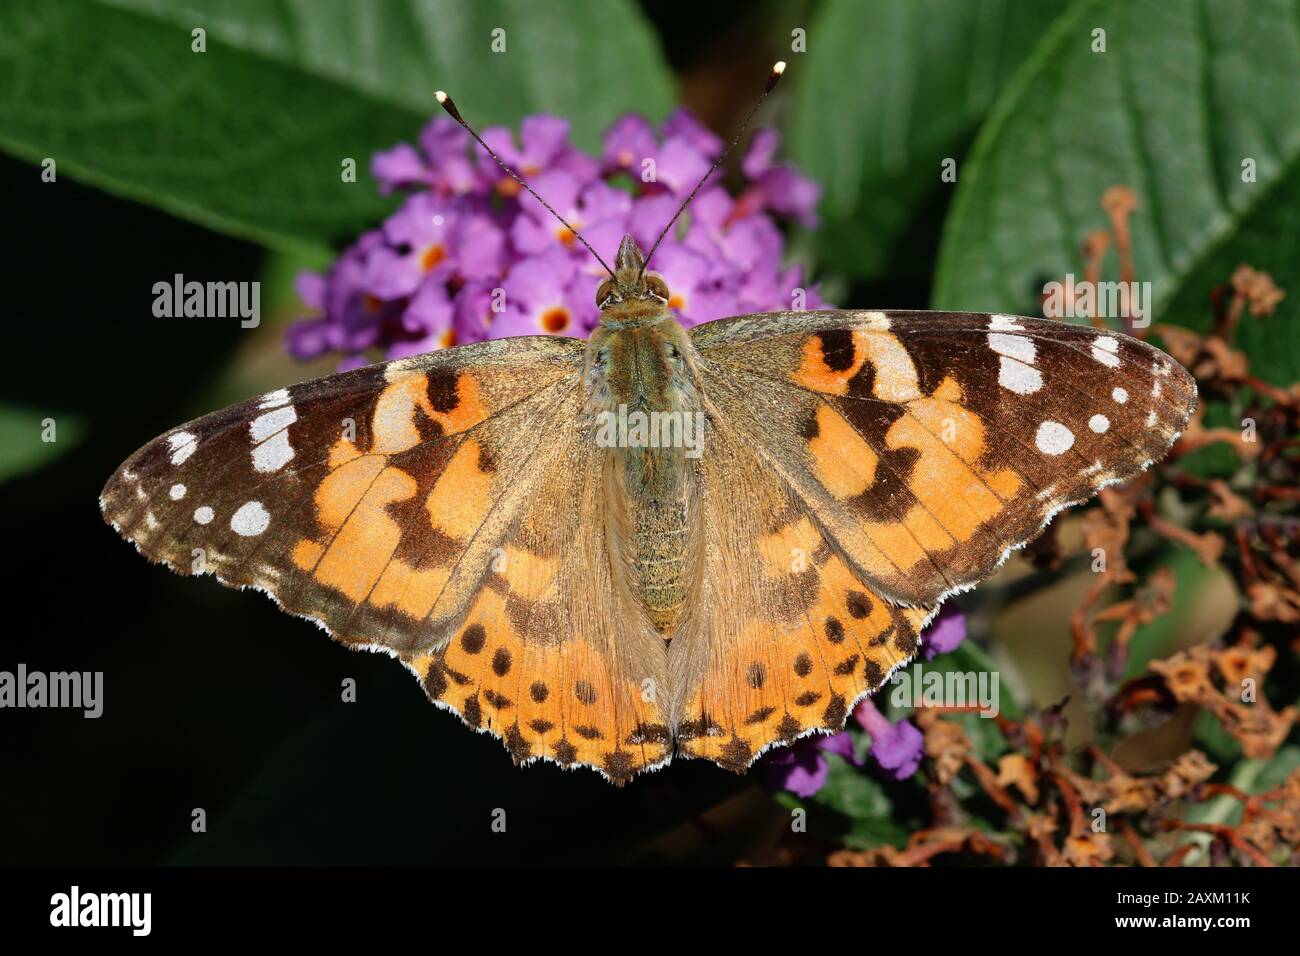 Eine Gemalte Frau Schmetterling (Vanessa cardui) Nektaring auf einer lila oder lila Blumen. Stockfoto